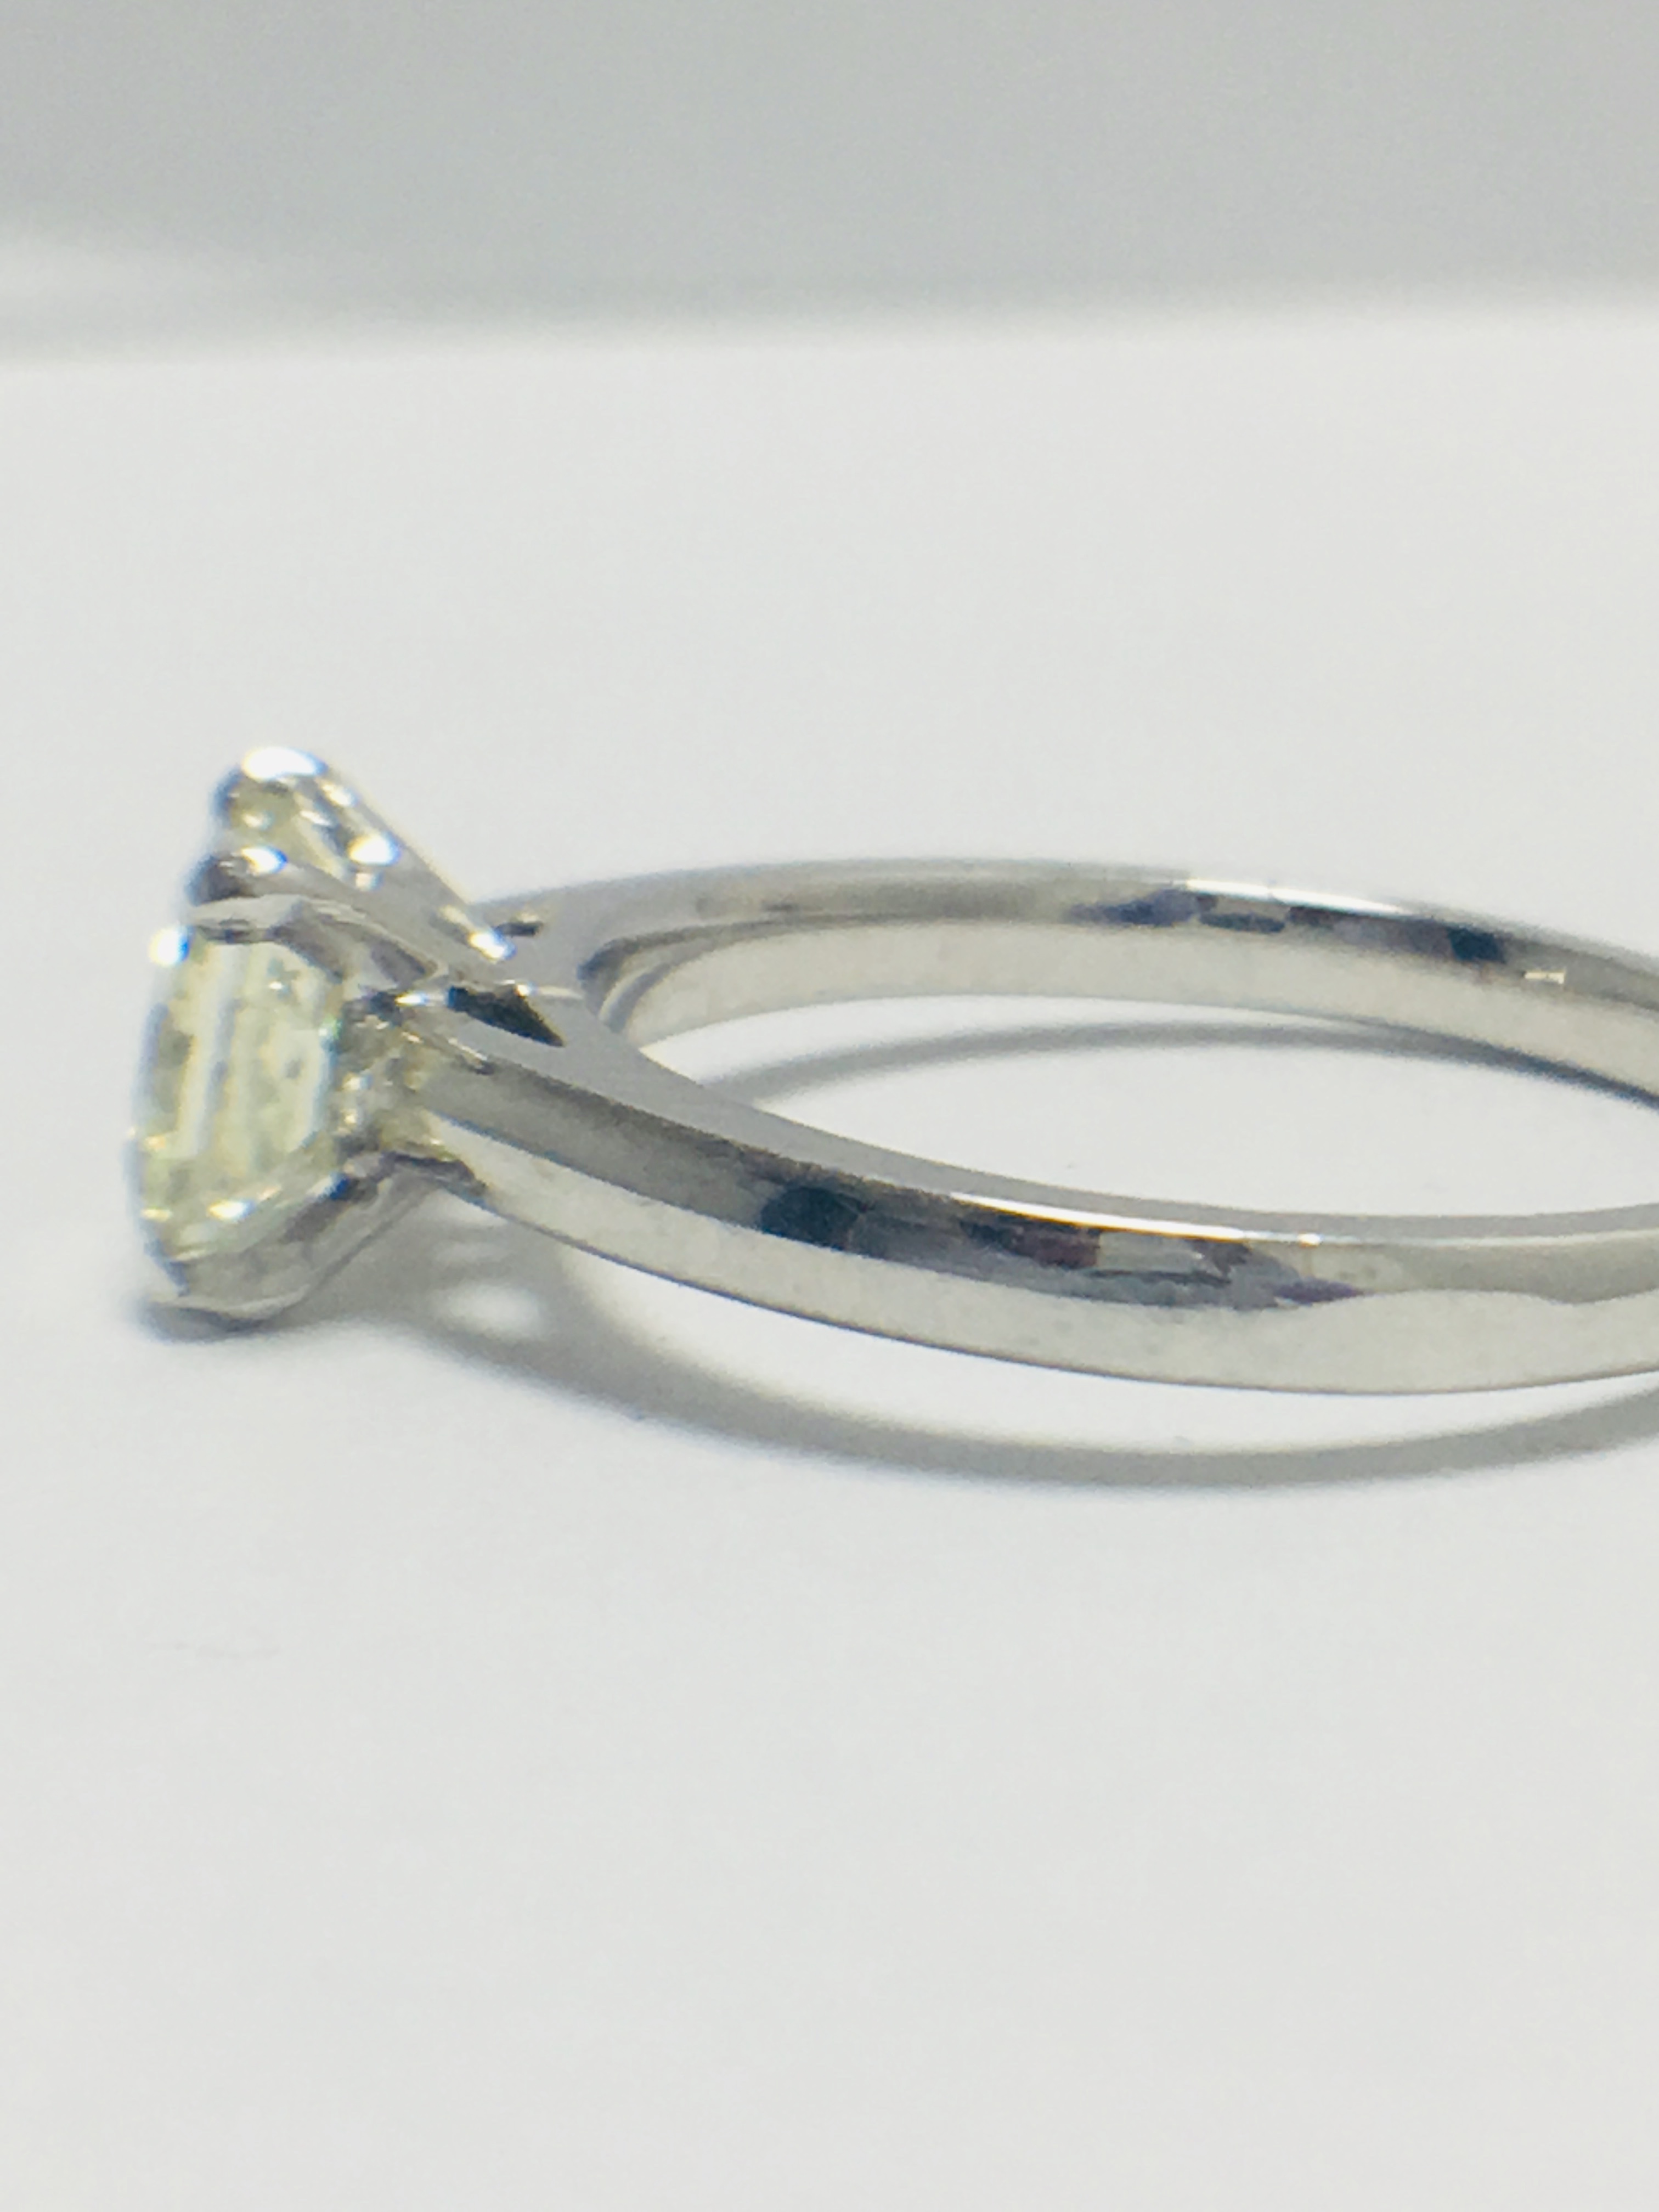 1ct platinum Diamond solitaire ring - Image 2 of 8